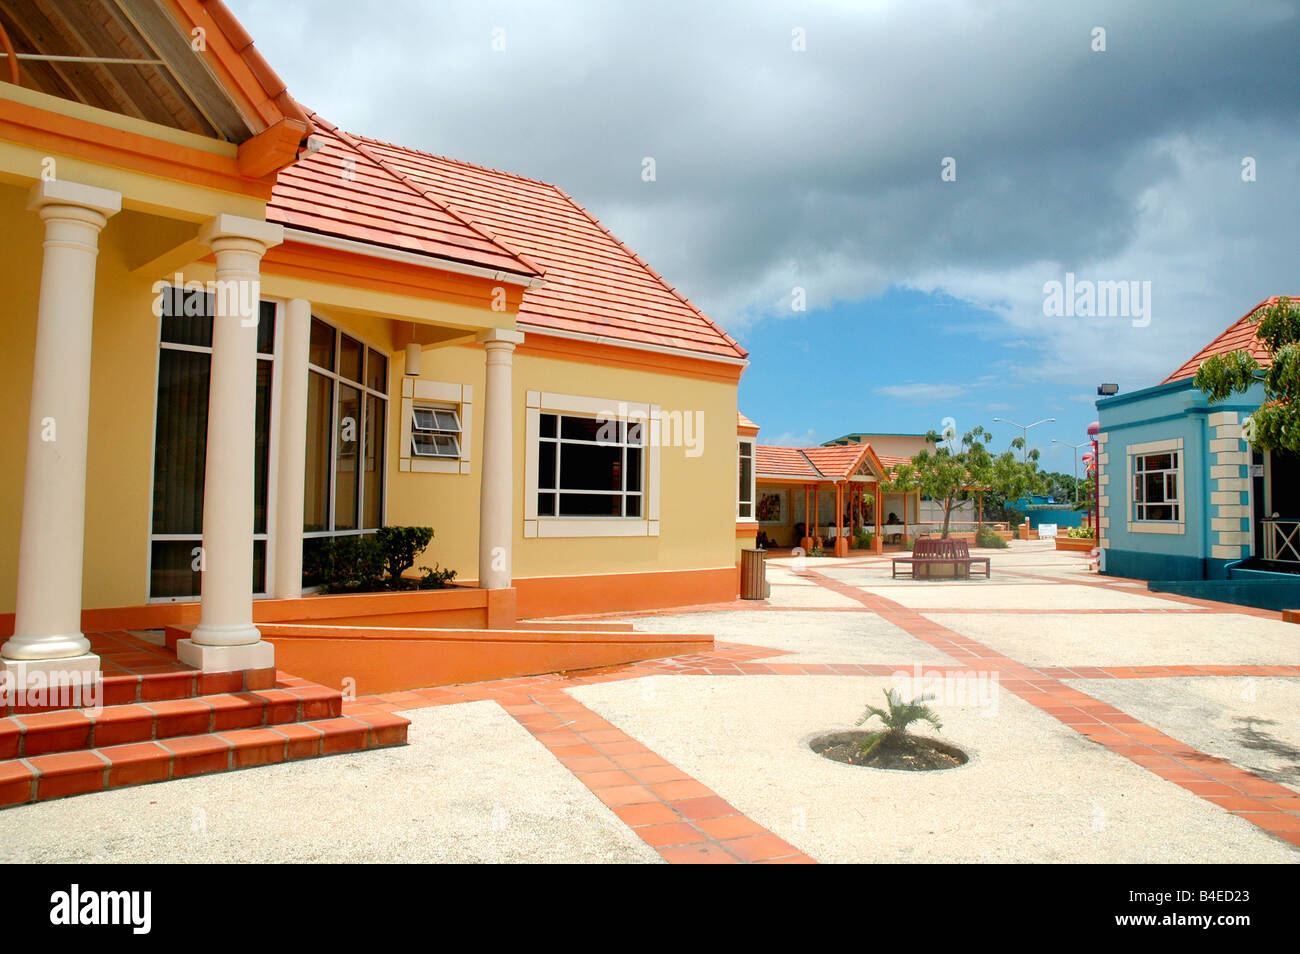 Colorate in stile caraibico 'pelican villiage craft centre' artigianale dei caraibi shopping plaza barbados Foto Stock